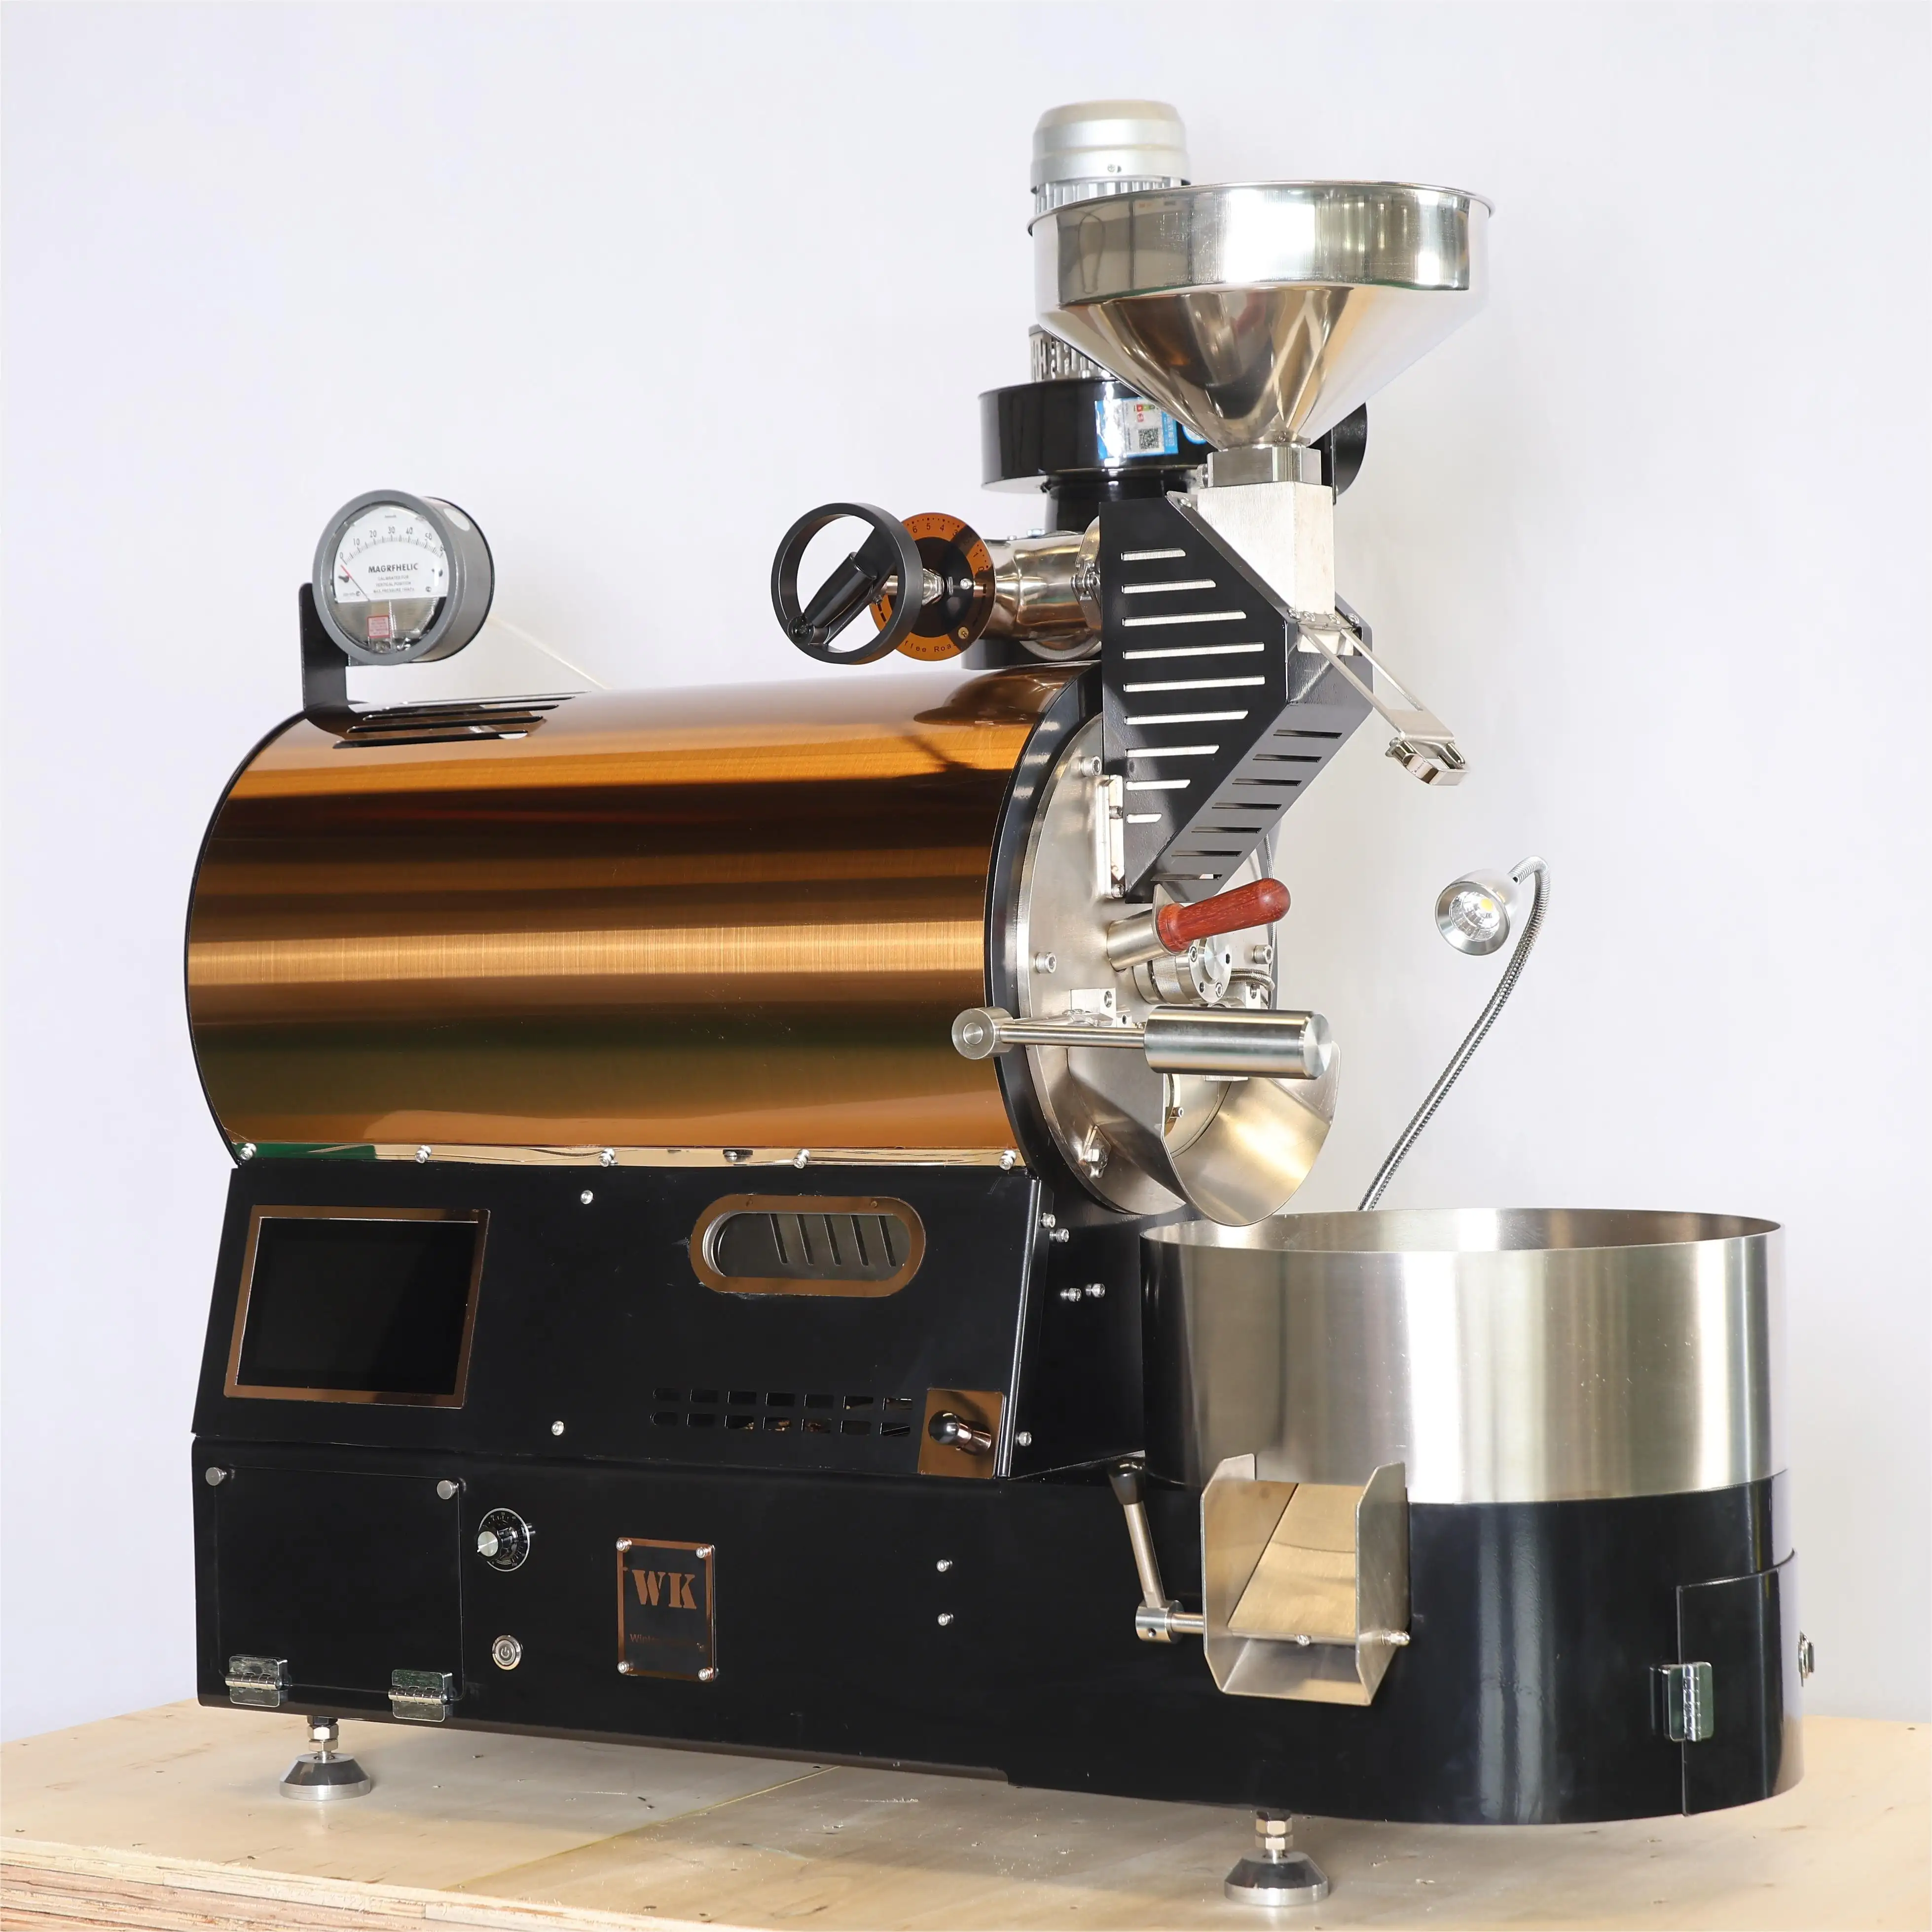 ماكينة تحميص قهوة 2 كجم من Wintop ماكينة تحميص حبوب البن للمتاجر والبيوت